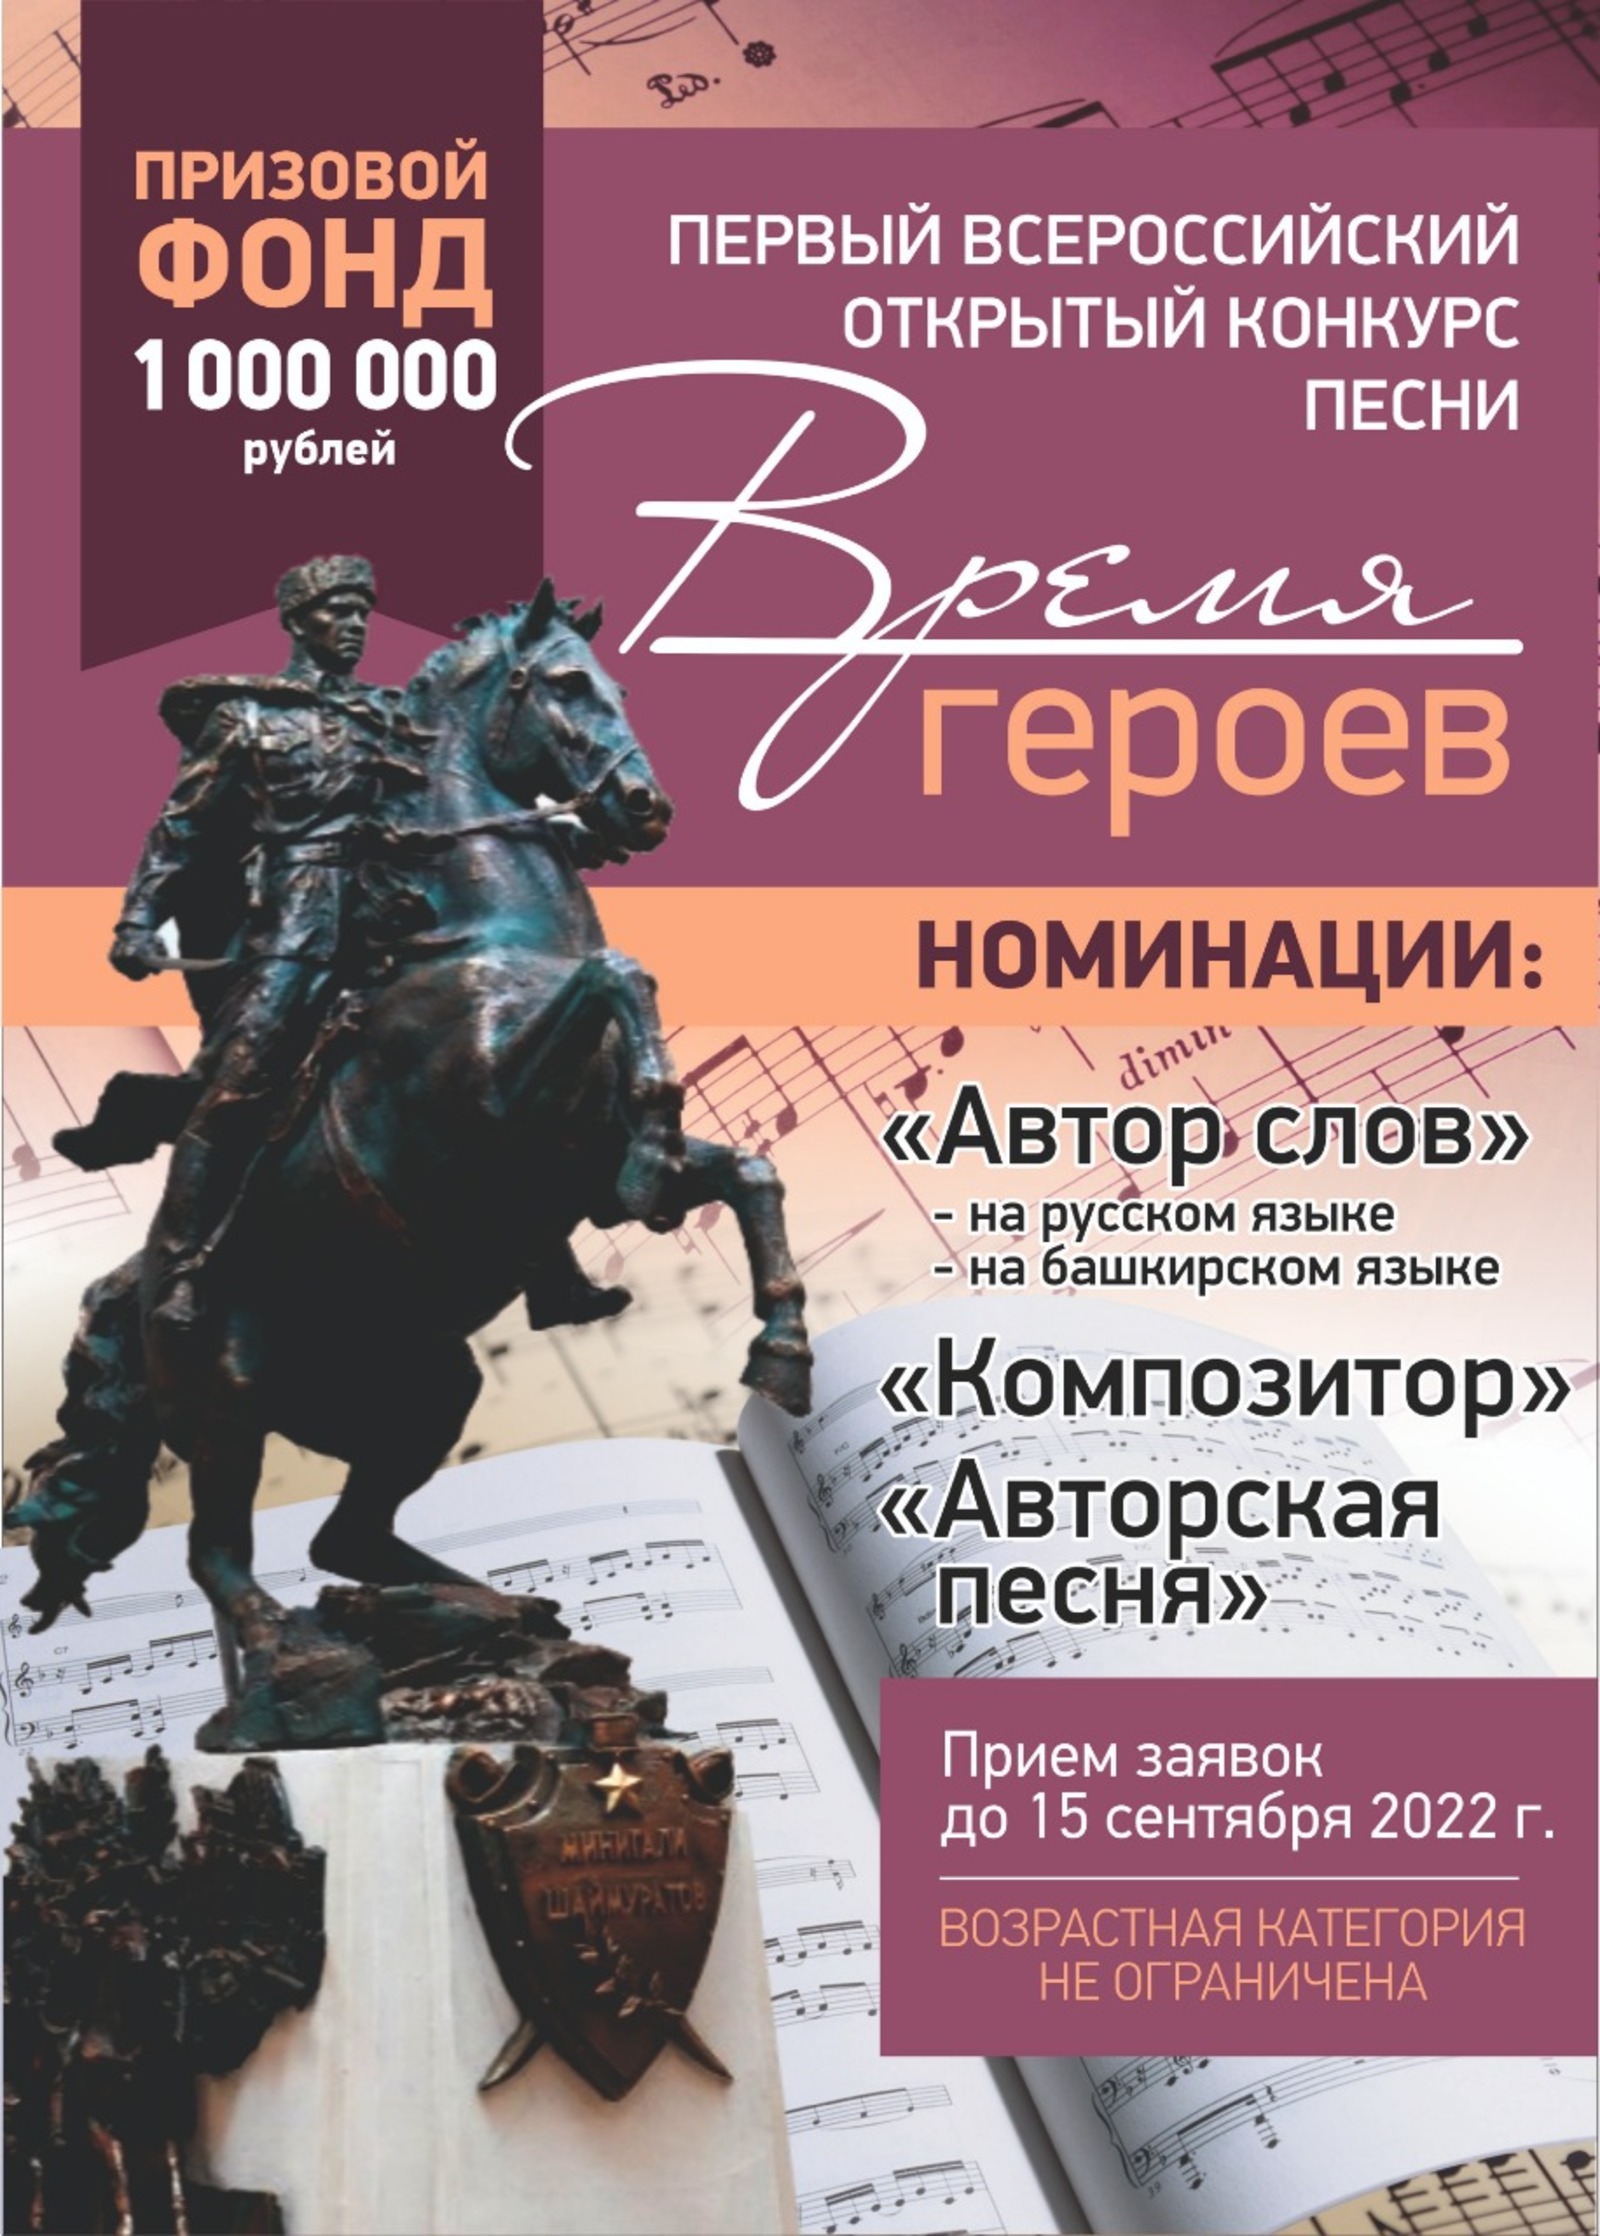 В Башкортостане пройдет I Всероссийский открытый конкурс песни «Время героев»